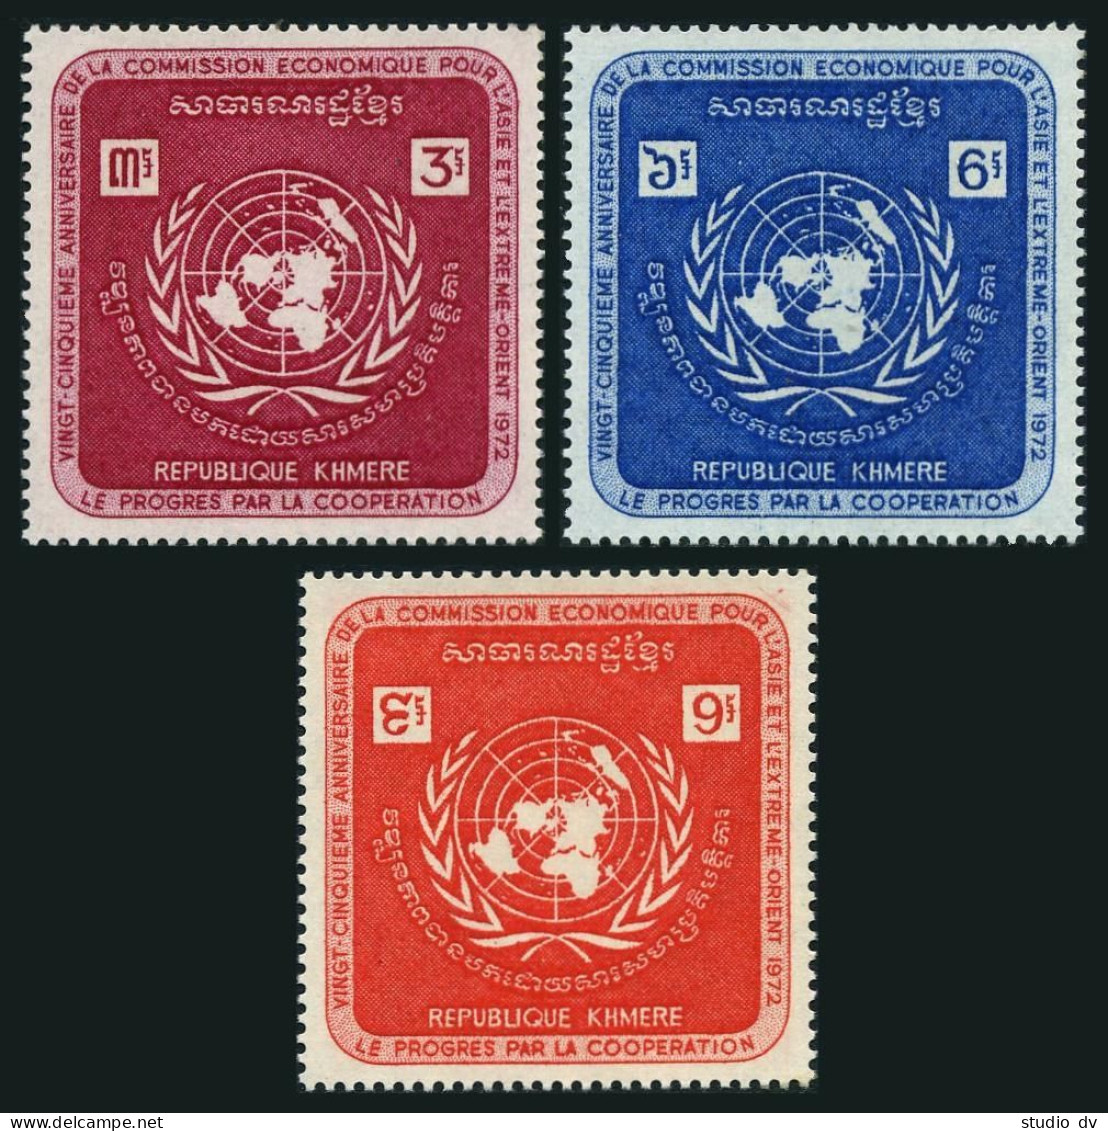 Cambodia 278-280,MNH.Michel 321-323. UN Economic Commission ECAFE,1972. - Cambodja